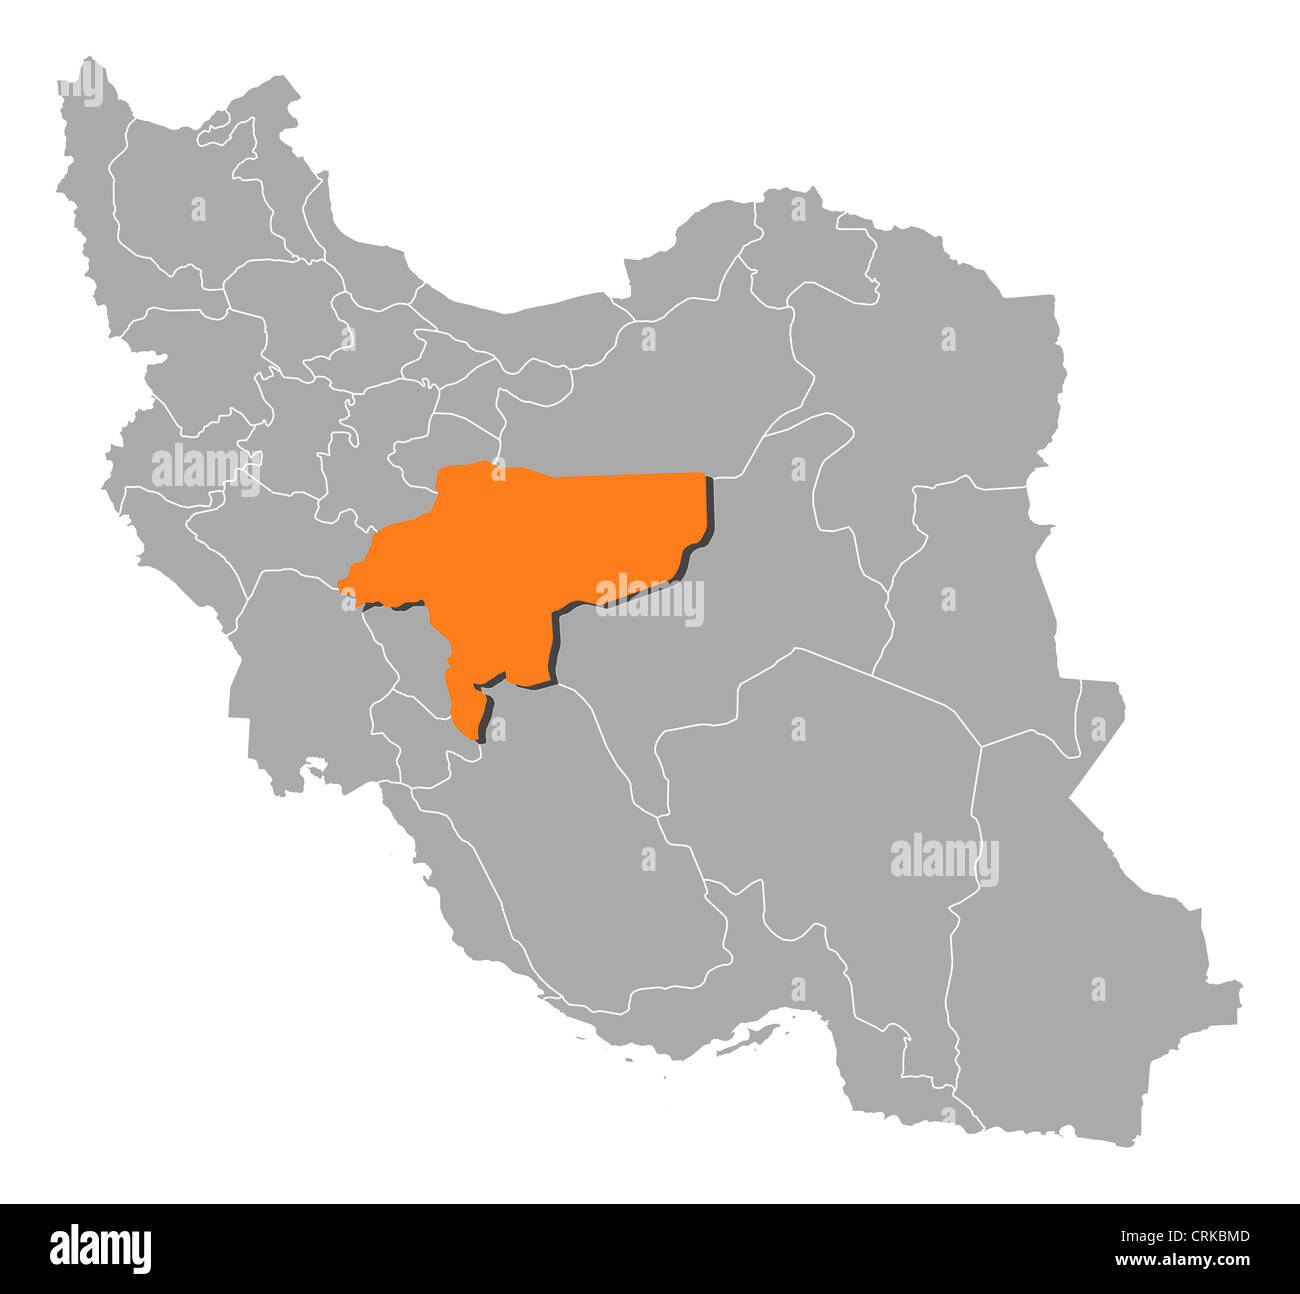 Mappa politica dell'Iran con le diverse province dove Isfahan è evidenziata. Foto Stock